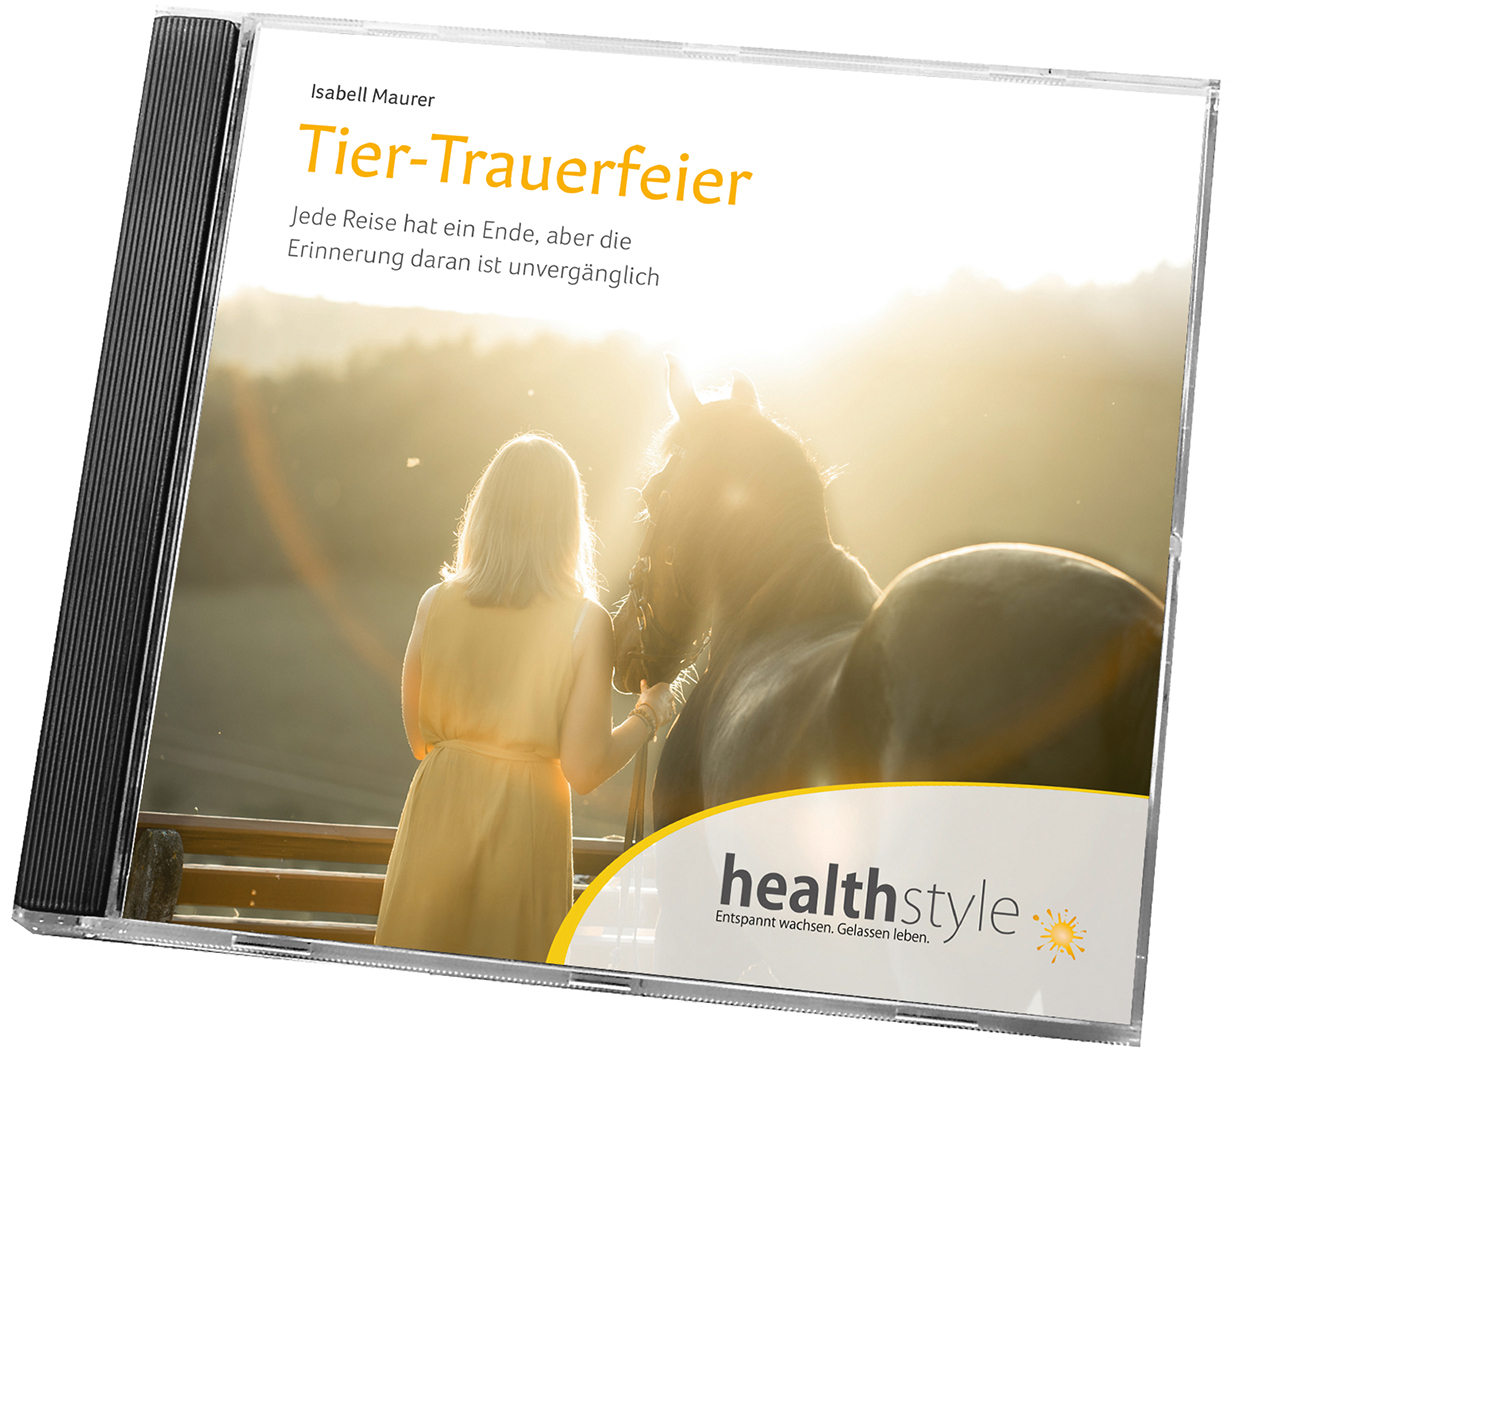 Tier-Trauerfeier (CD), Produktbild 1